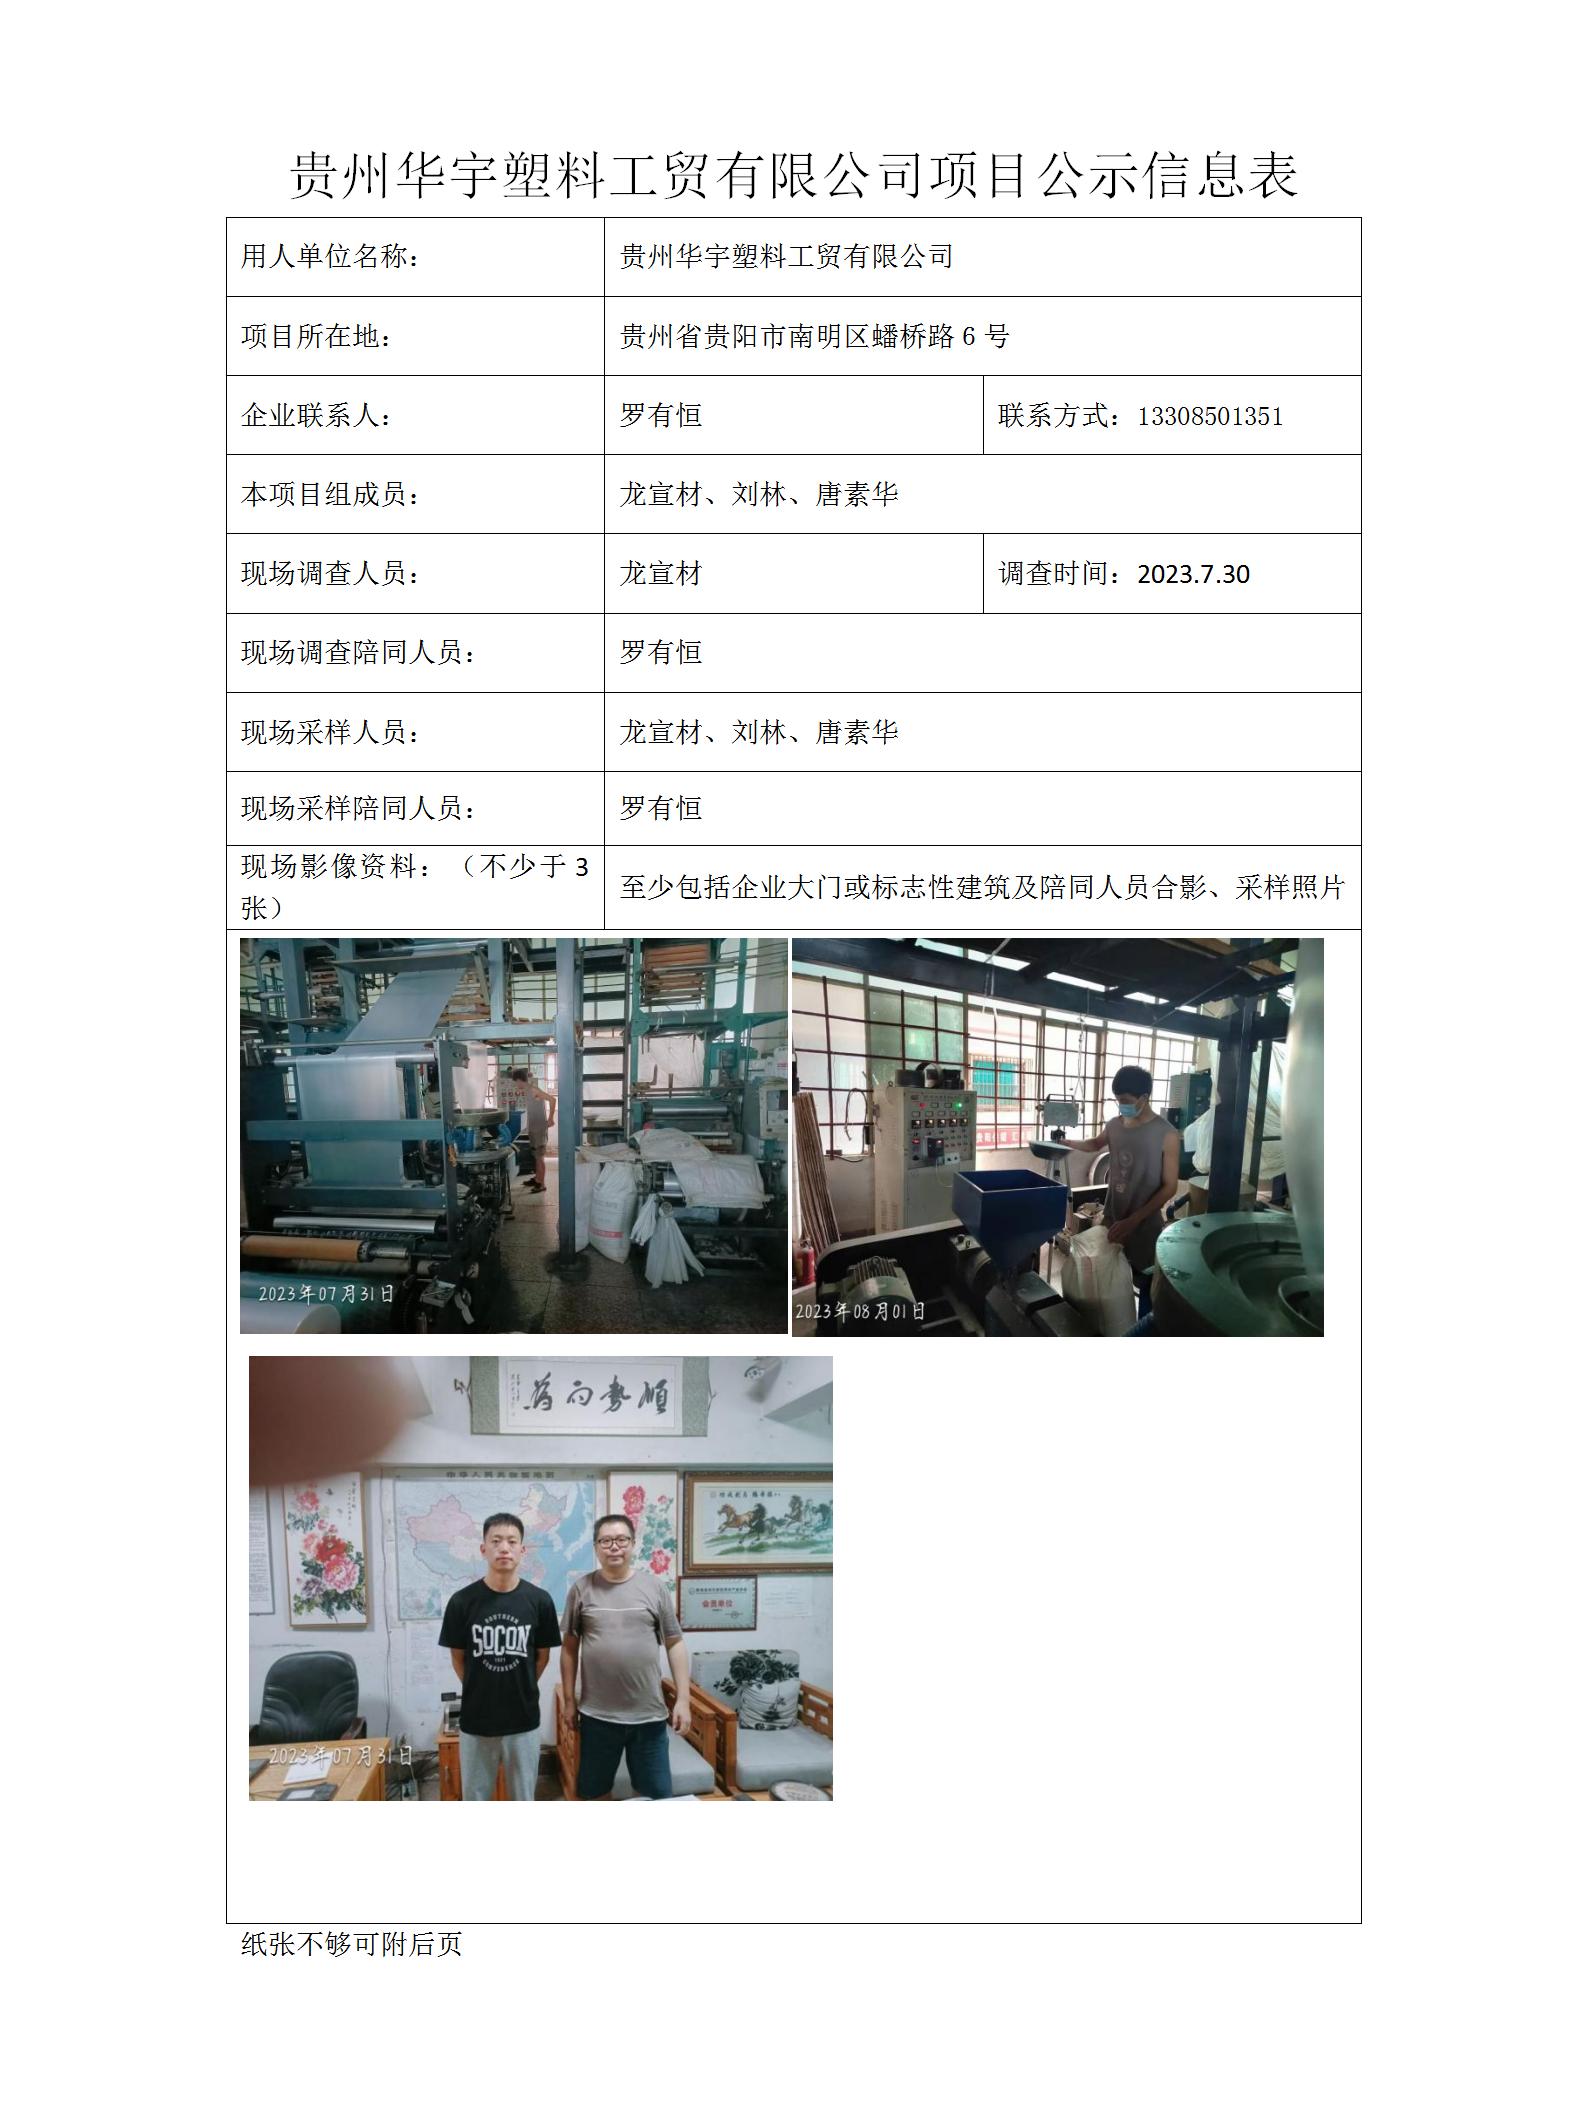 贵州华宇塑料工贸有限公司项目公示信息表_01.jpg